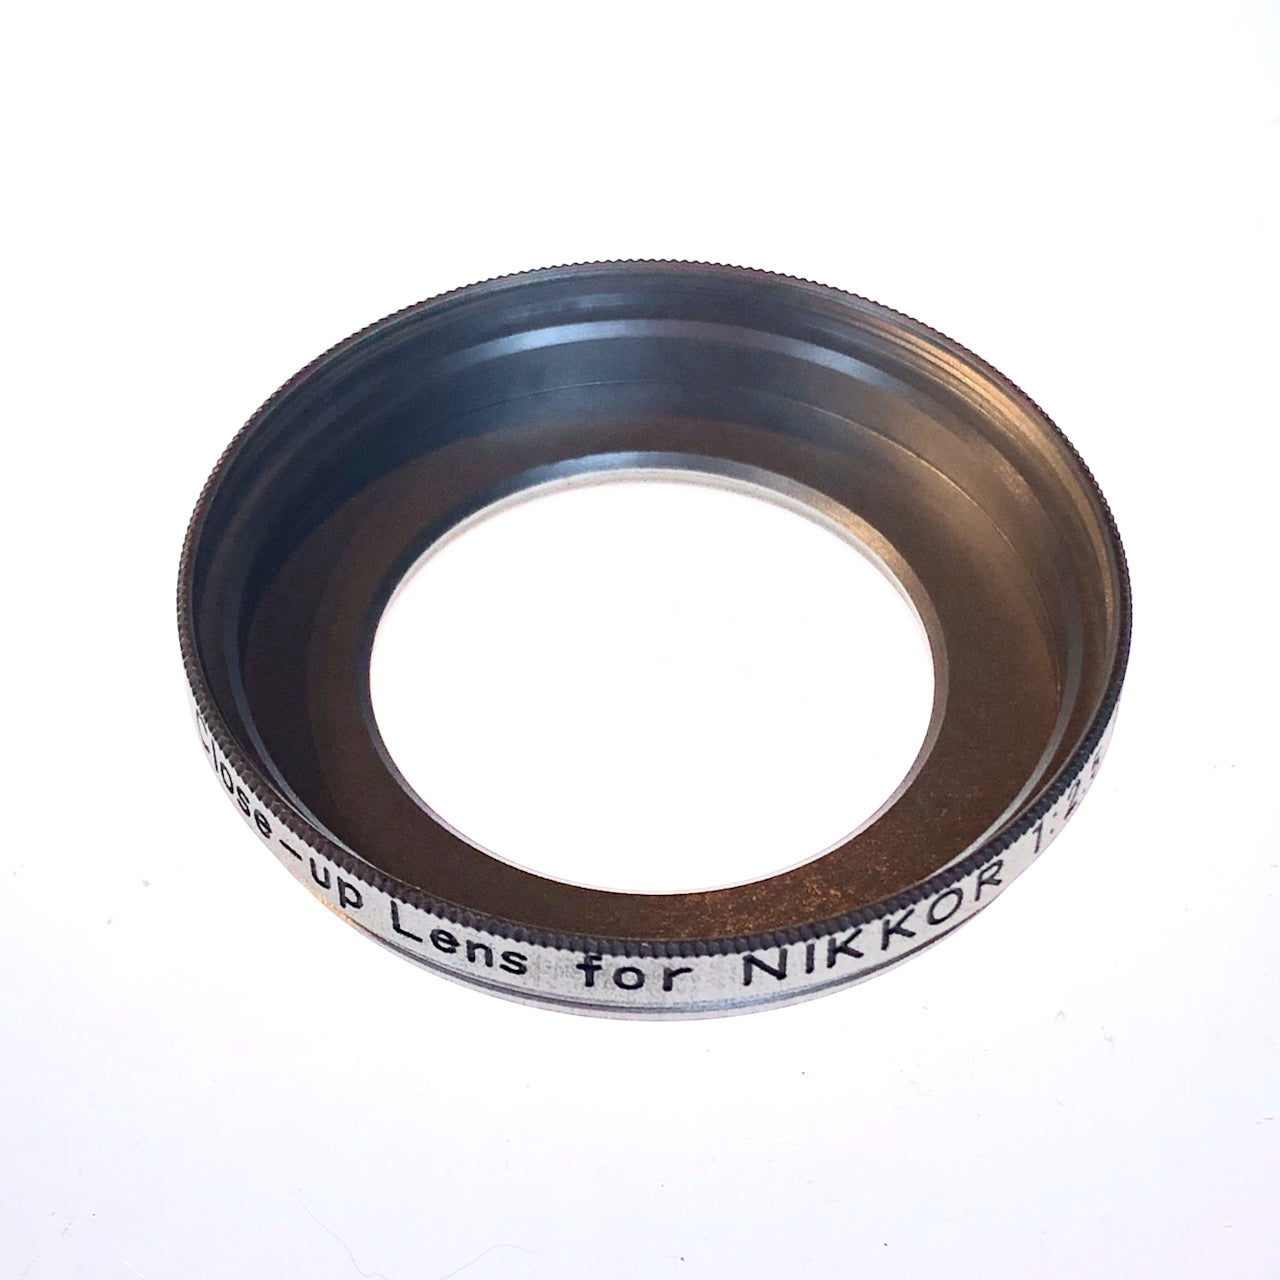 Close-up lens for Nikkor 5cm f2.5 for Nikkorex